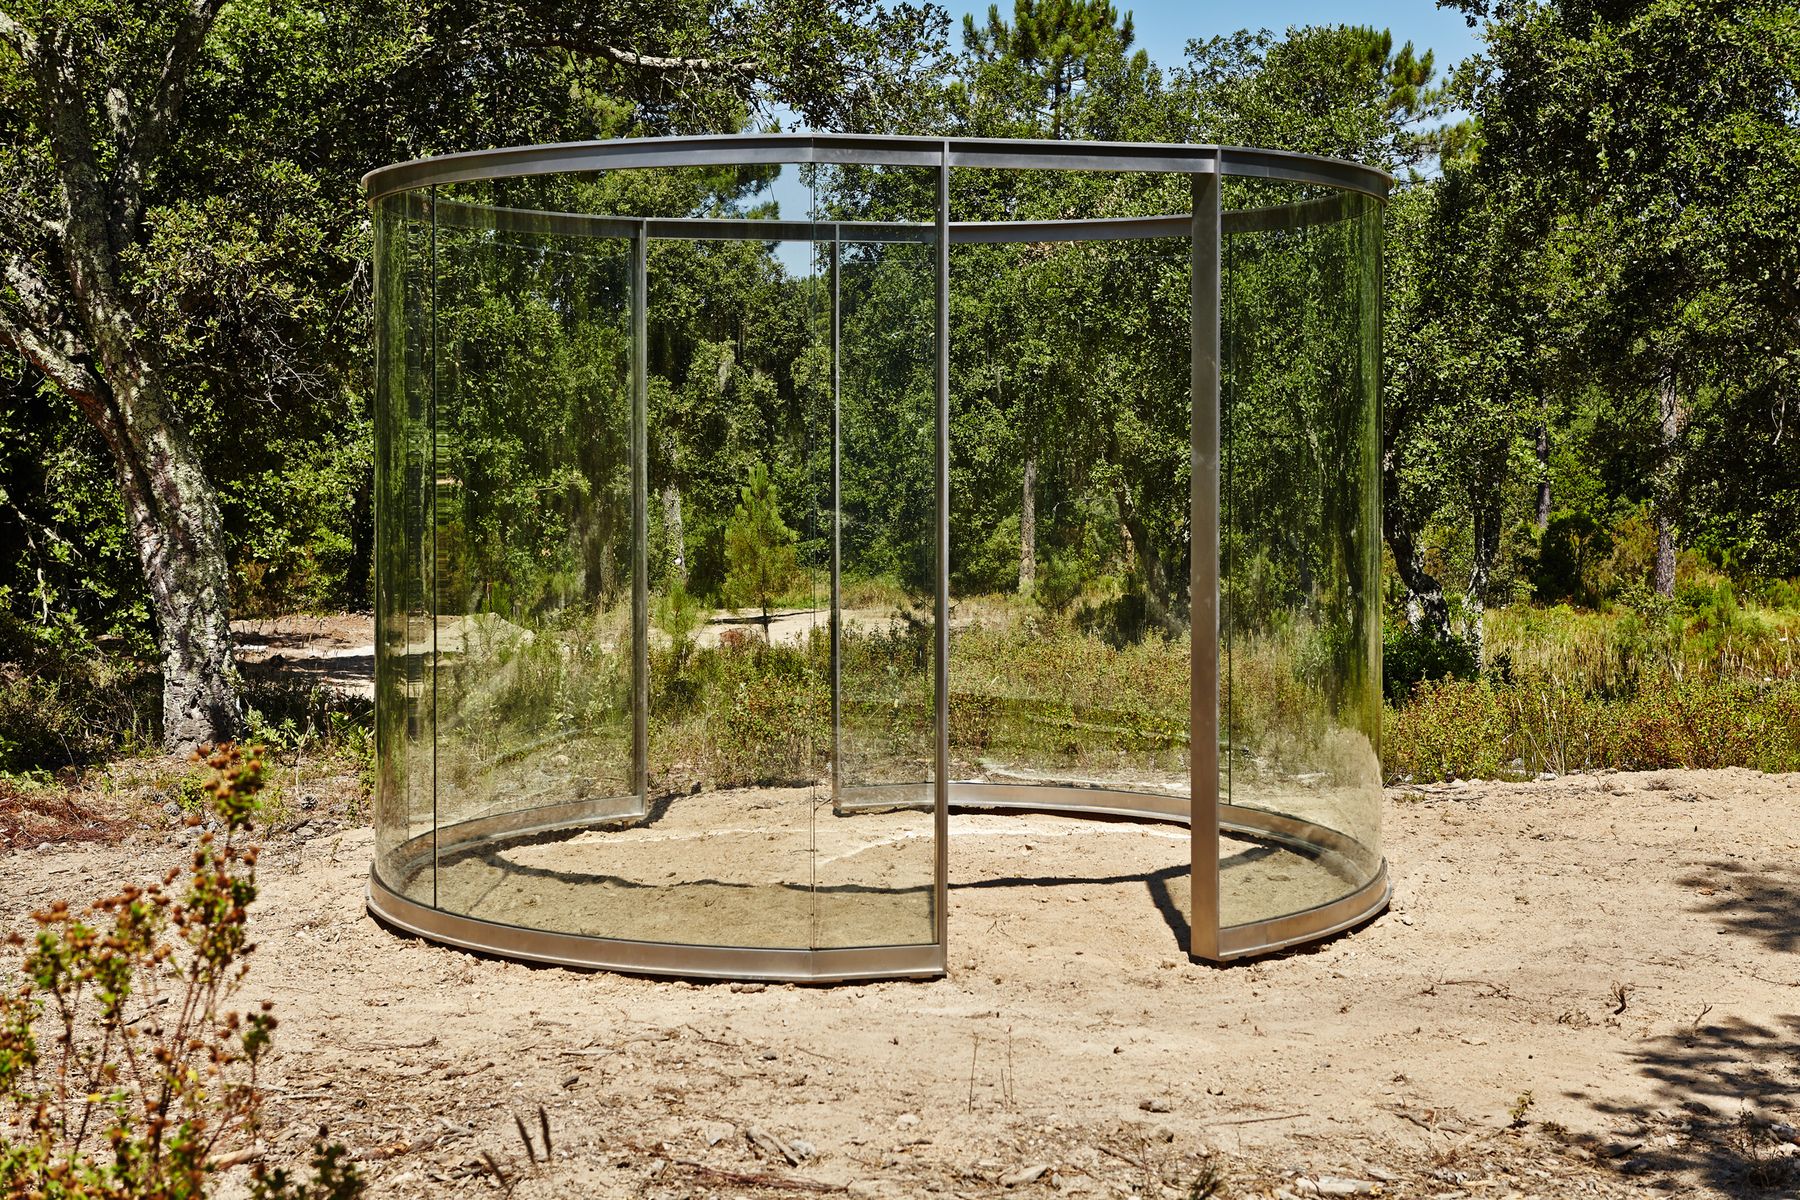 Sculpture or Pavilion?, 2015